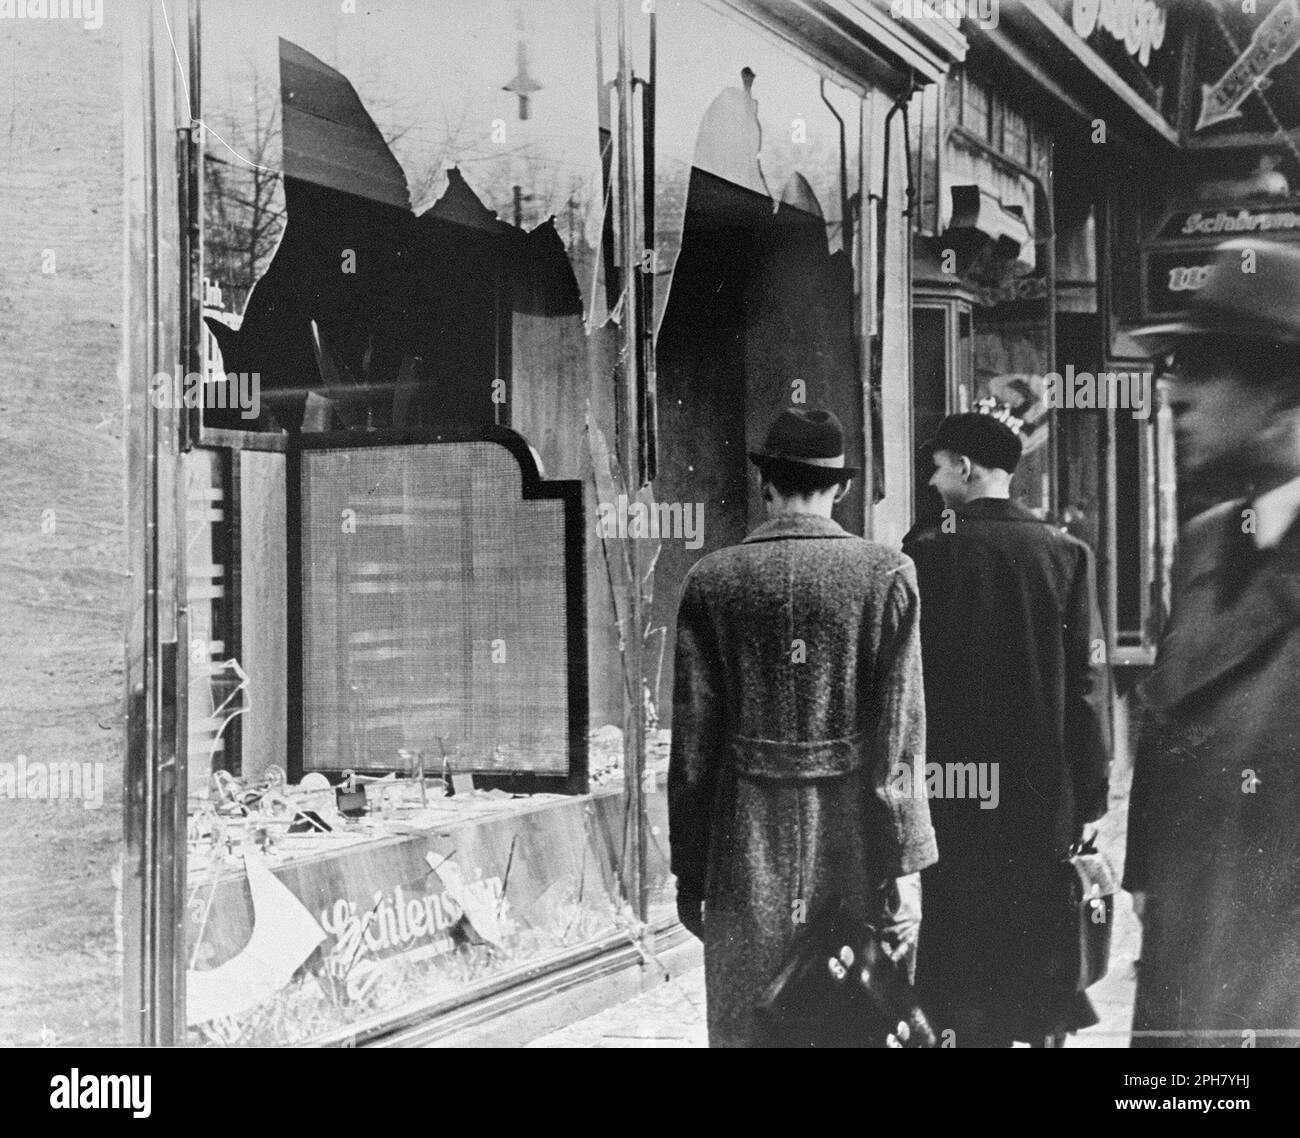 Ein zerstörter jüdischer Laden in einer Straße in Berlin nach Kristallnacht. Kristallnacht war ein landesweites Pogrom, das am 9. November 1938 von der nazi-Partei organisiert und durchgeführt wurde. Geschäfte und Synagogen wurden zerstört und Menschen gedemütigt und geschlagen, während die Polizei zuschaute oder sogar half. Obwohl die Schäden und die Zahl der Angreifer recht gering waren, zeigte die Tatsache, dass sie völlig unangefochten waren, den Nazis, dass sie wirklich mit den Juden anfangen konnten, und ist damit einer der wichtigsten Meilensteine auf dem Weg zum Holocaust. Stockfoto